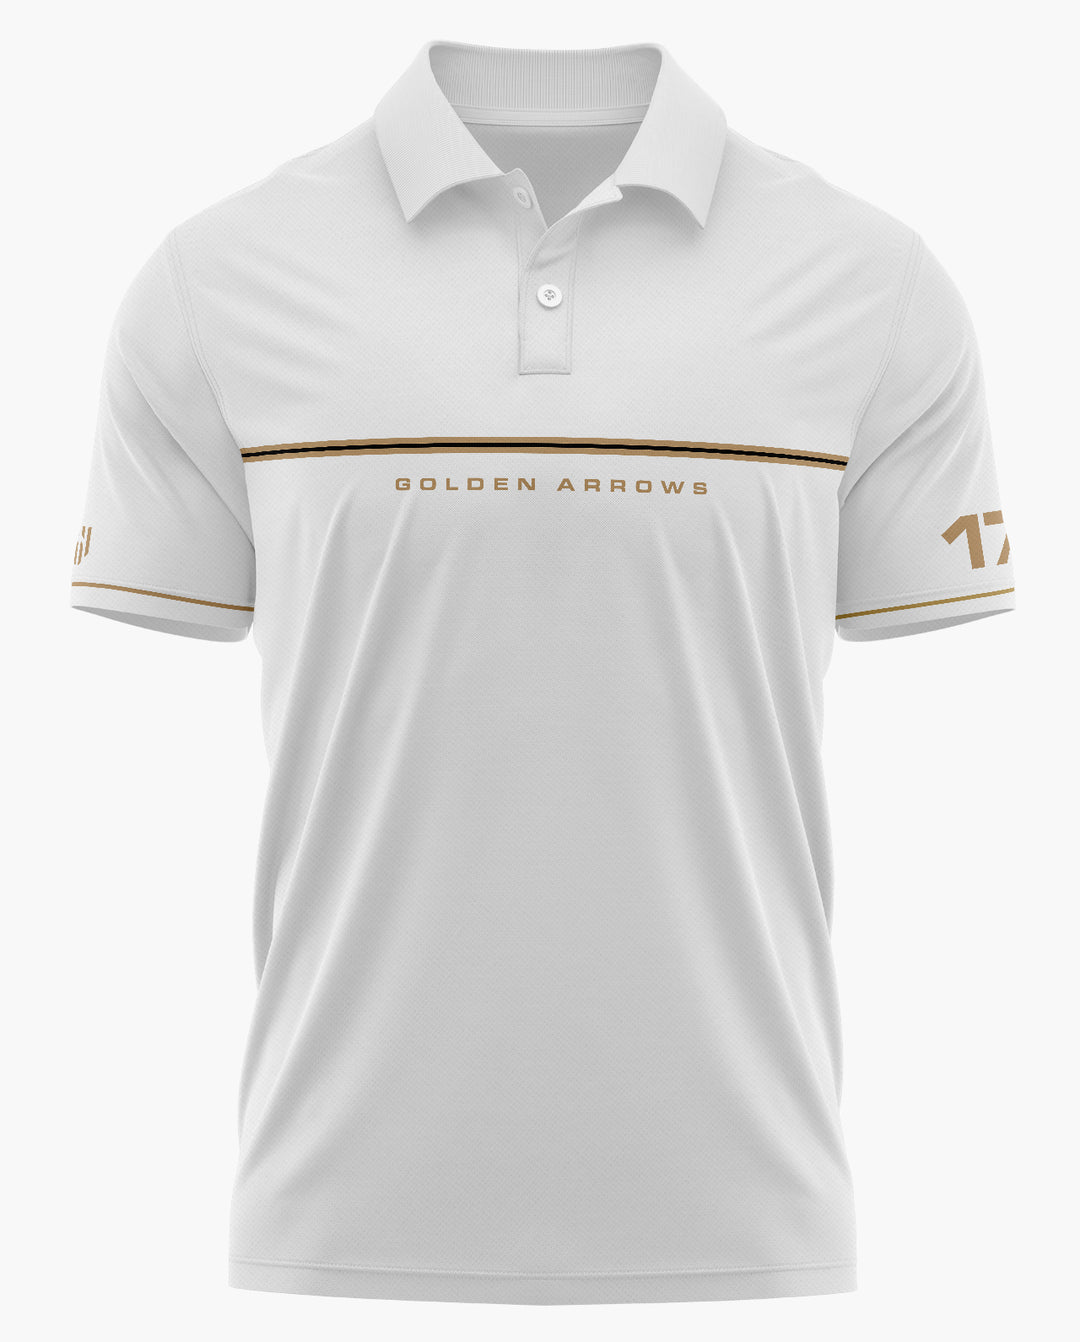 GOLDEN ARROWS SQUADRON Polo T-shirt - Aero Armour